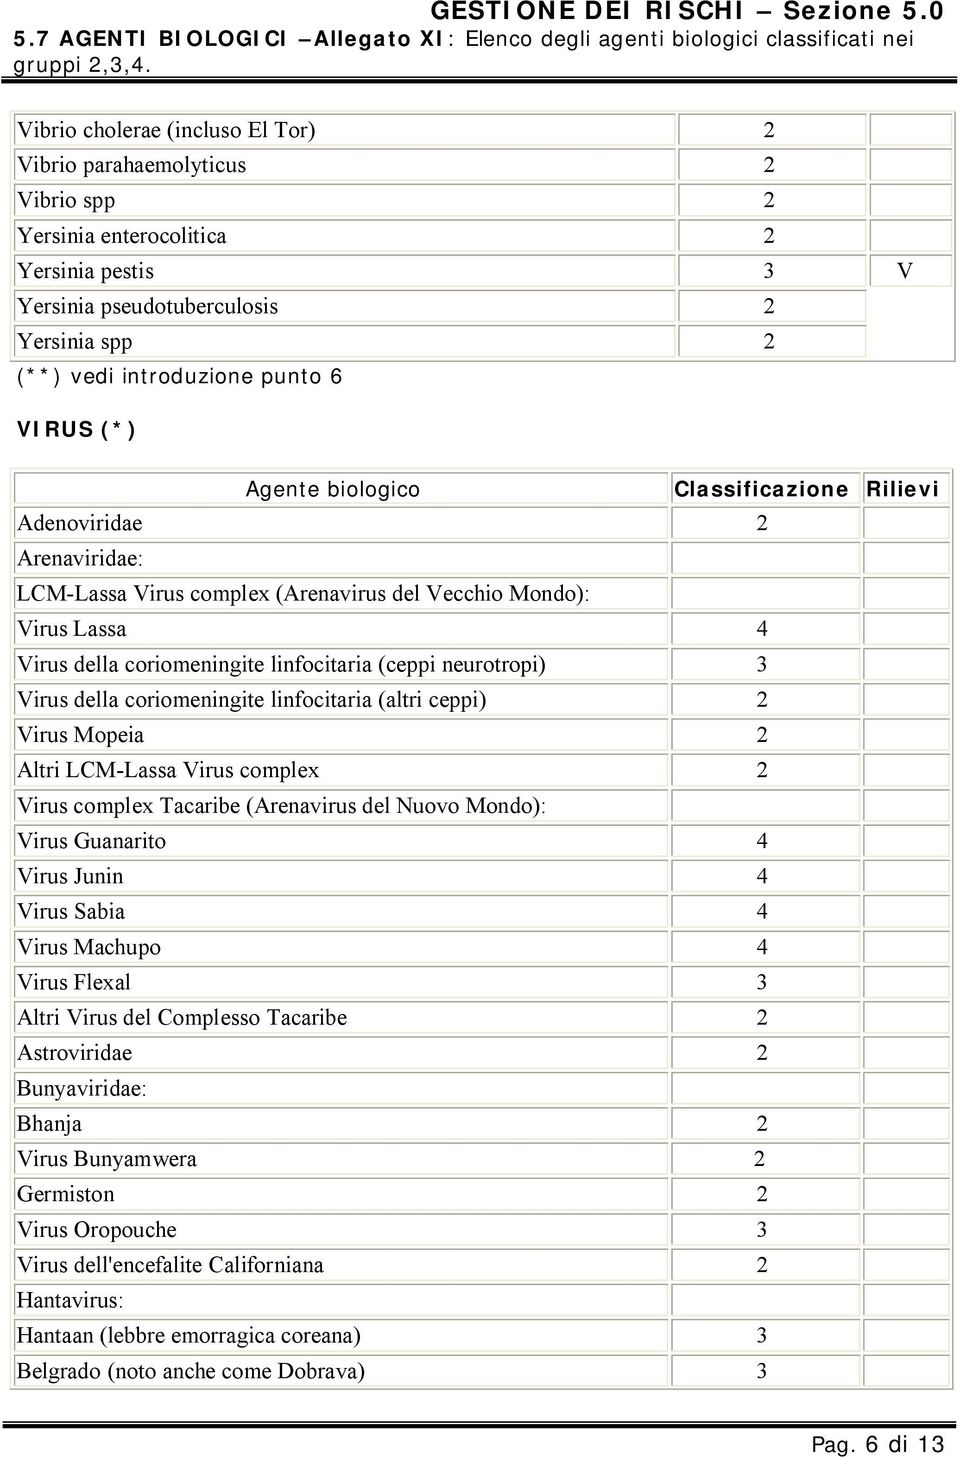 VIRUS (*) Agente biologico Classificazione Rilievi Adenoviridae 2 Arenaviridae: LCM-Lassa Virus complex (Arenavirus del Vecchio Mondo): Virus Lassa 4 Virus della coriomeningite linfocitaria (ceppi